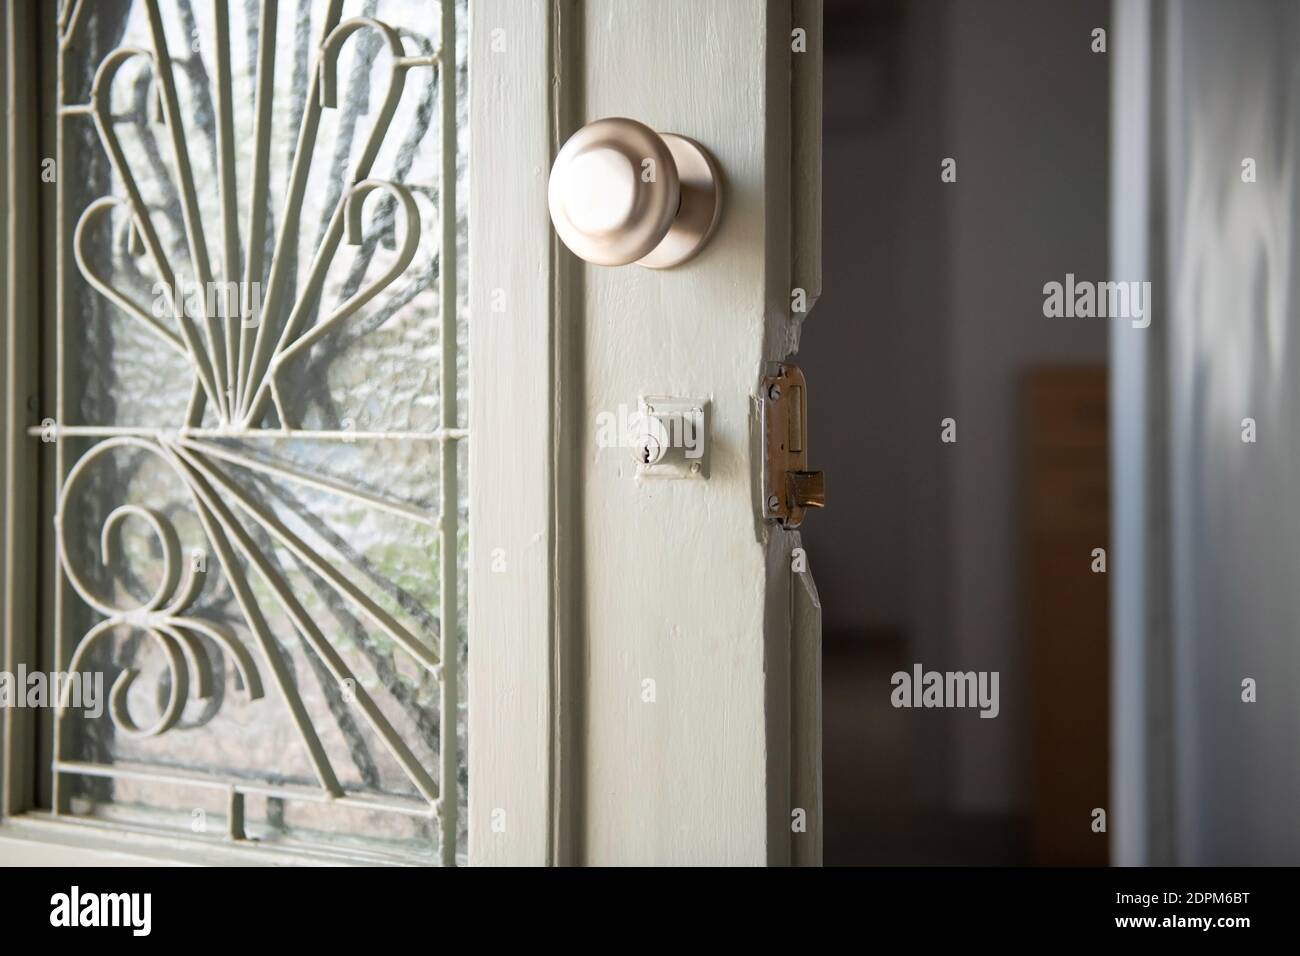 Manija de la puerta rota fotografías e imágenes de alta resolución - Alamy